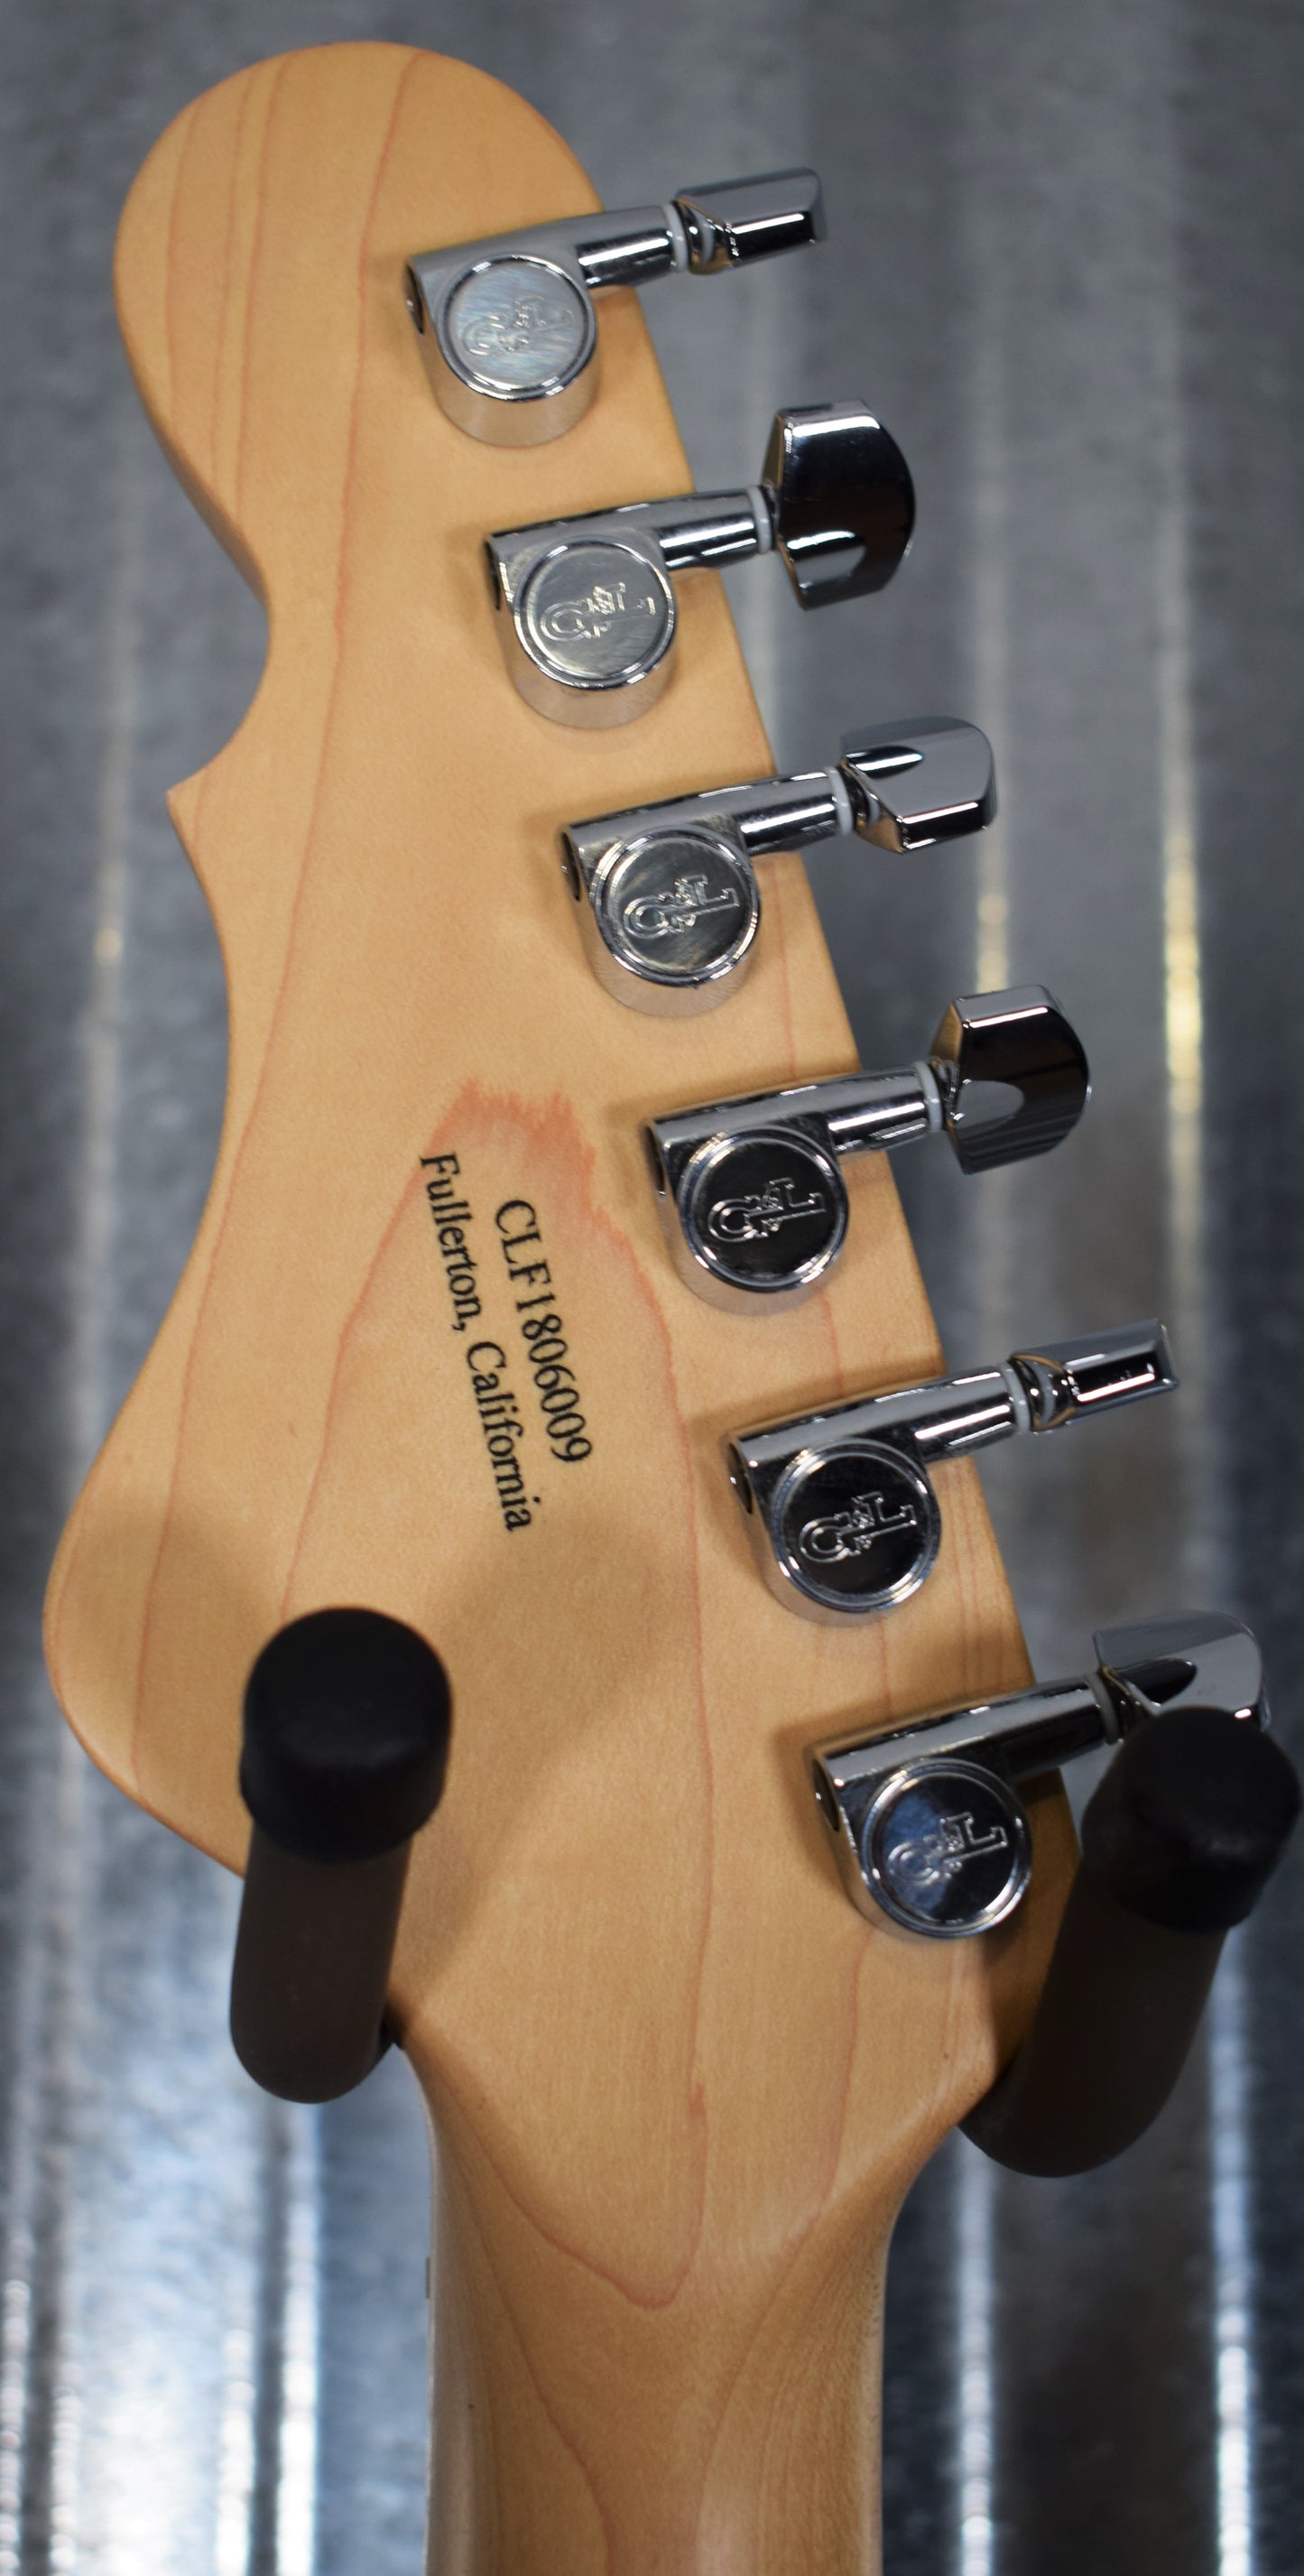 G&L USA SC-2 Himalayan Blue Guitar & Bag SC2 #6009